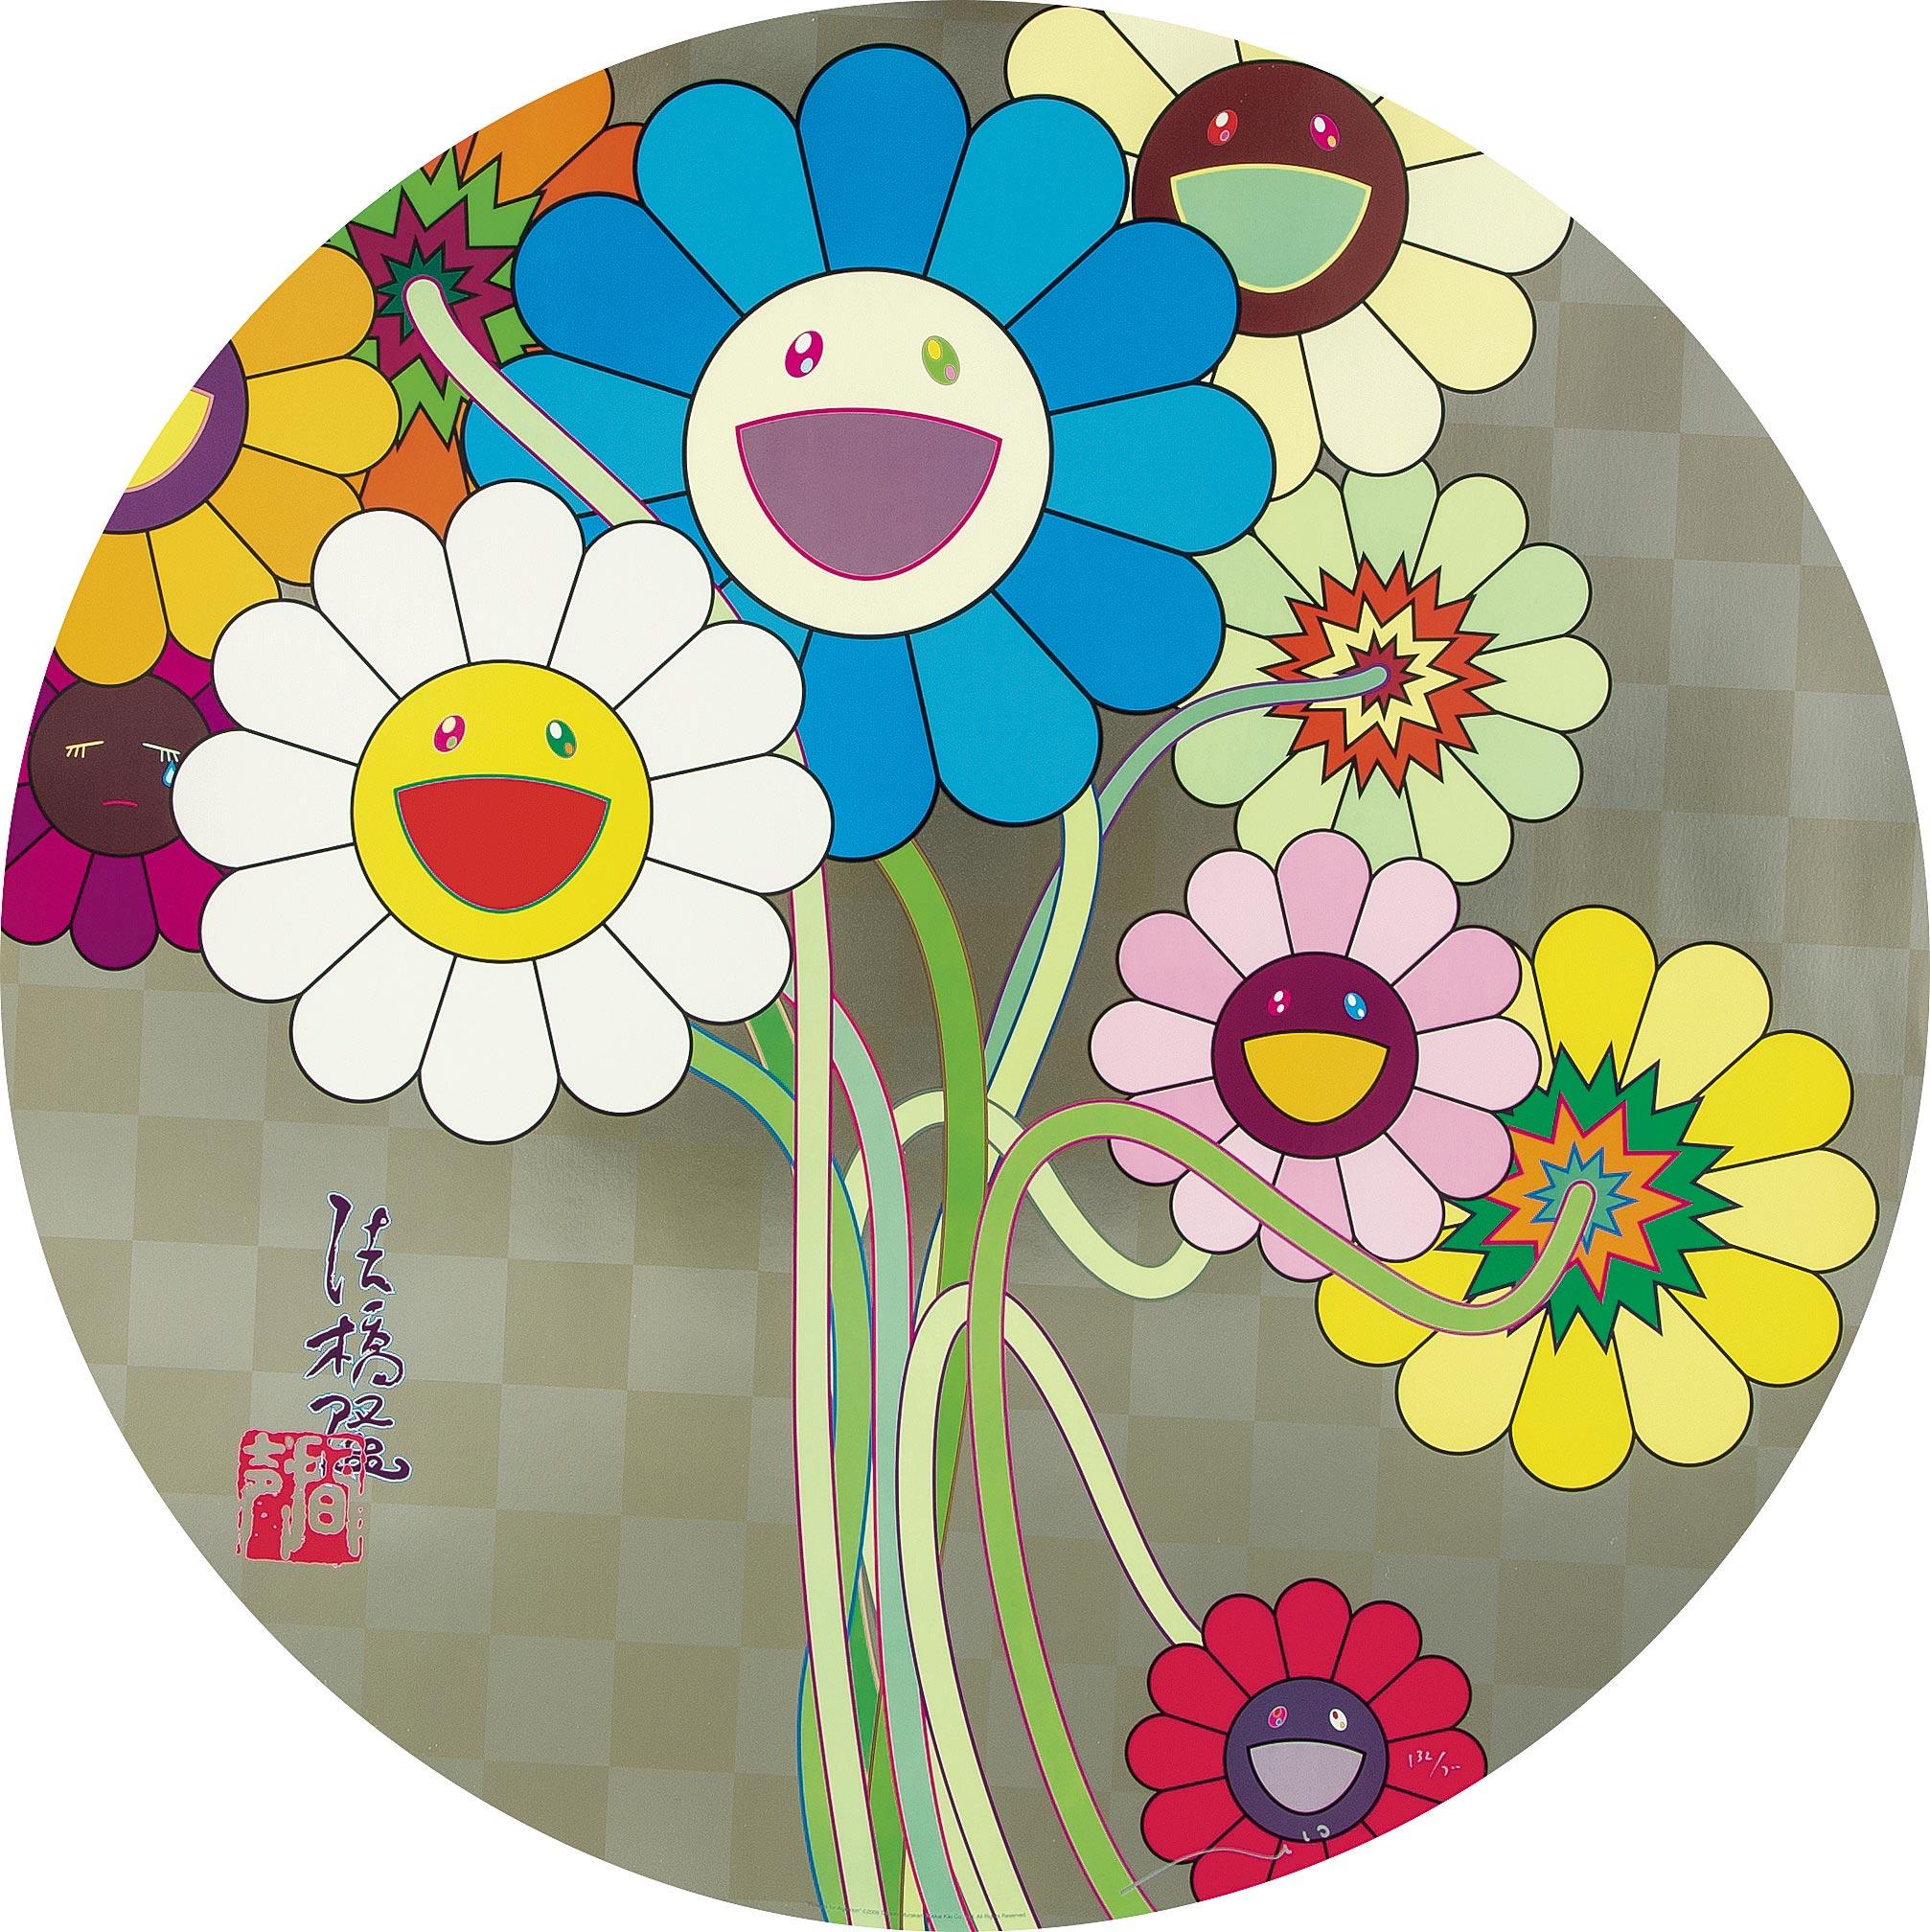 Des fleurs pour Algernon
2009 par Takashi Murakami
Impression offset, estampage à froid et vernissage haute brillance à l'encre argentée
signée, numérotée et tamponnée par l'Artistics
27 7/8 de diamètre
71 cm de diamètre
Édition  132/300

Takashi